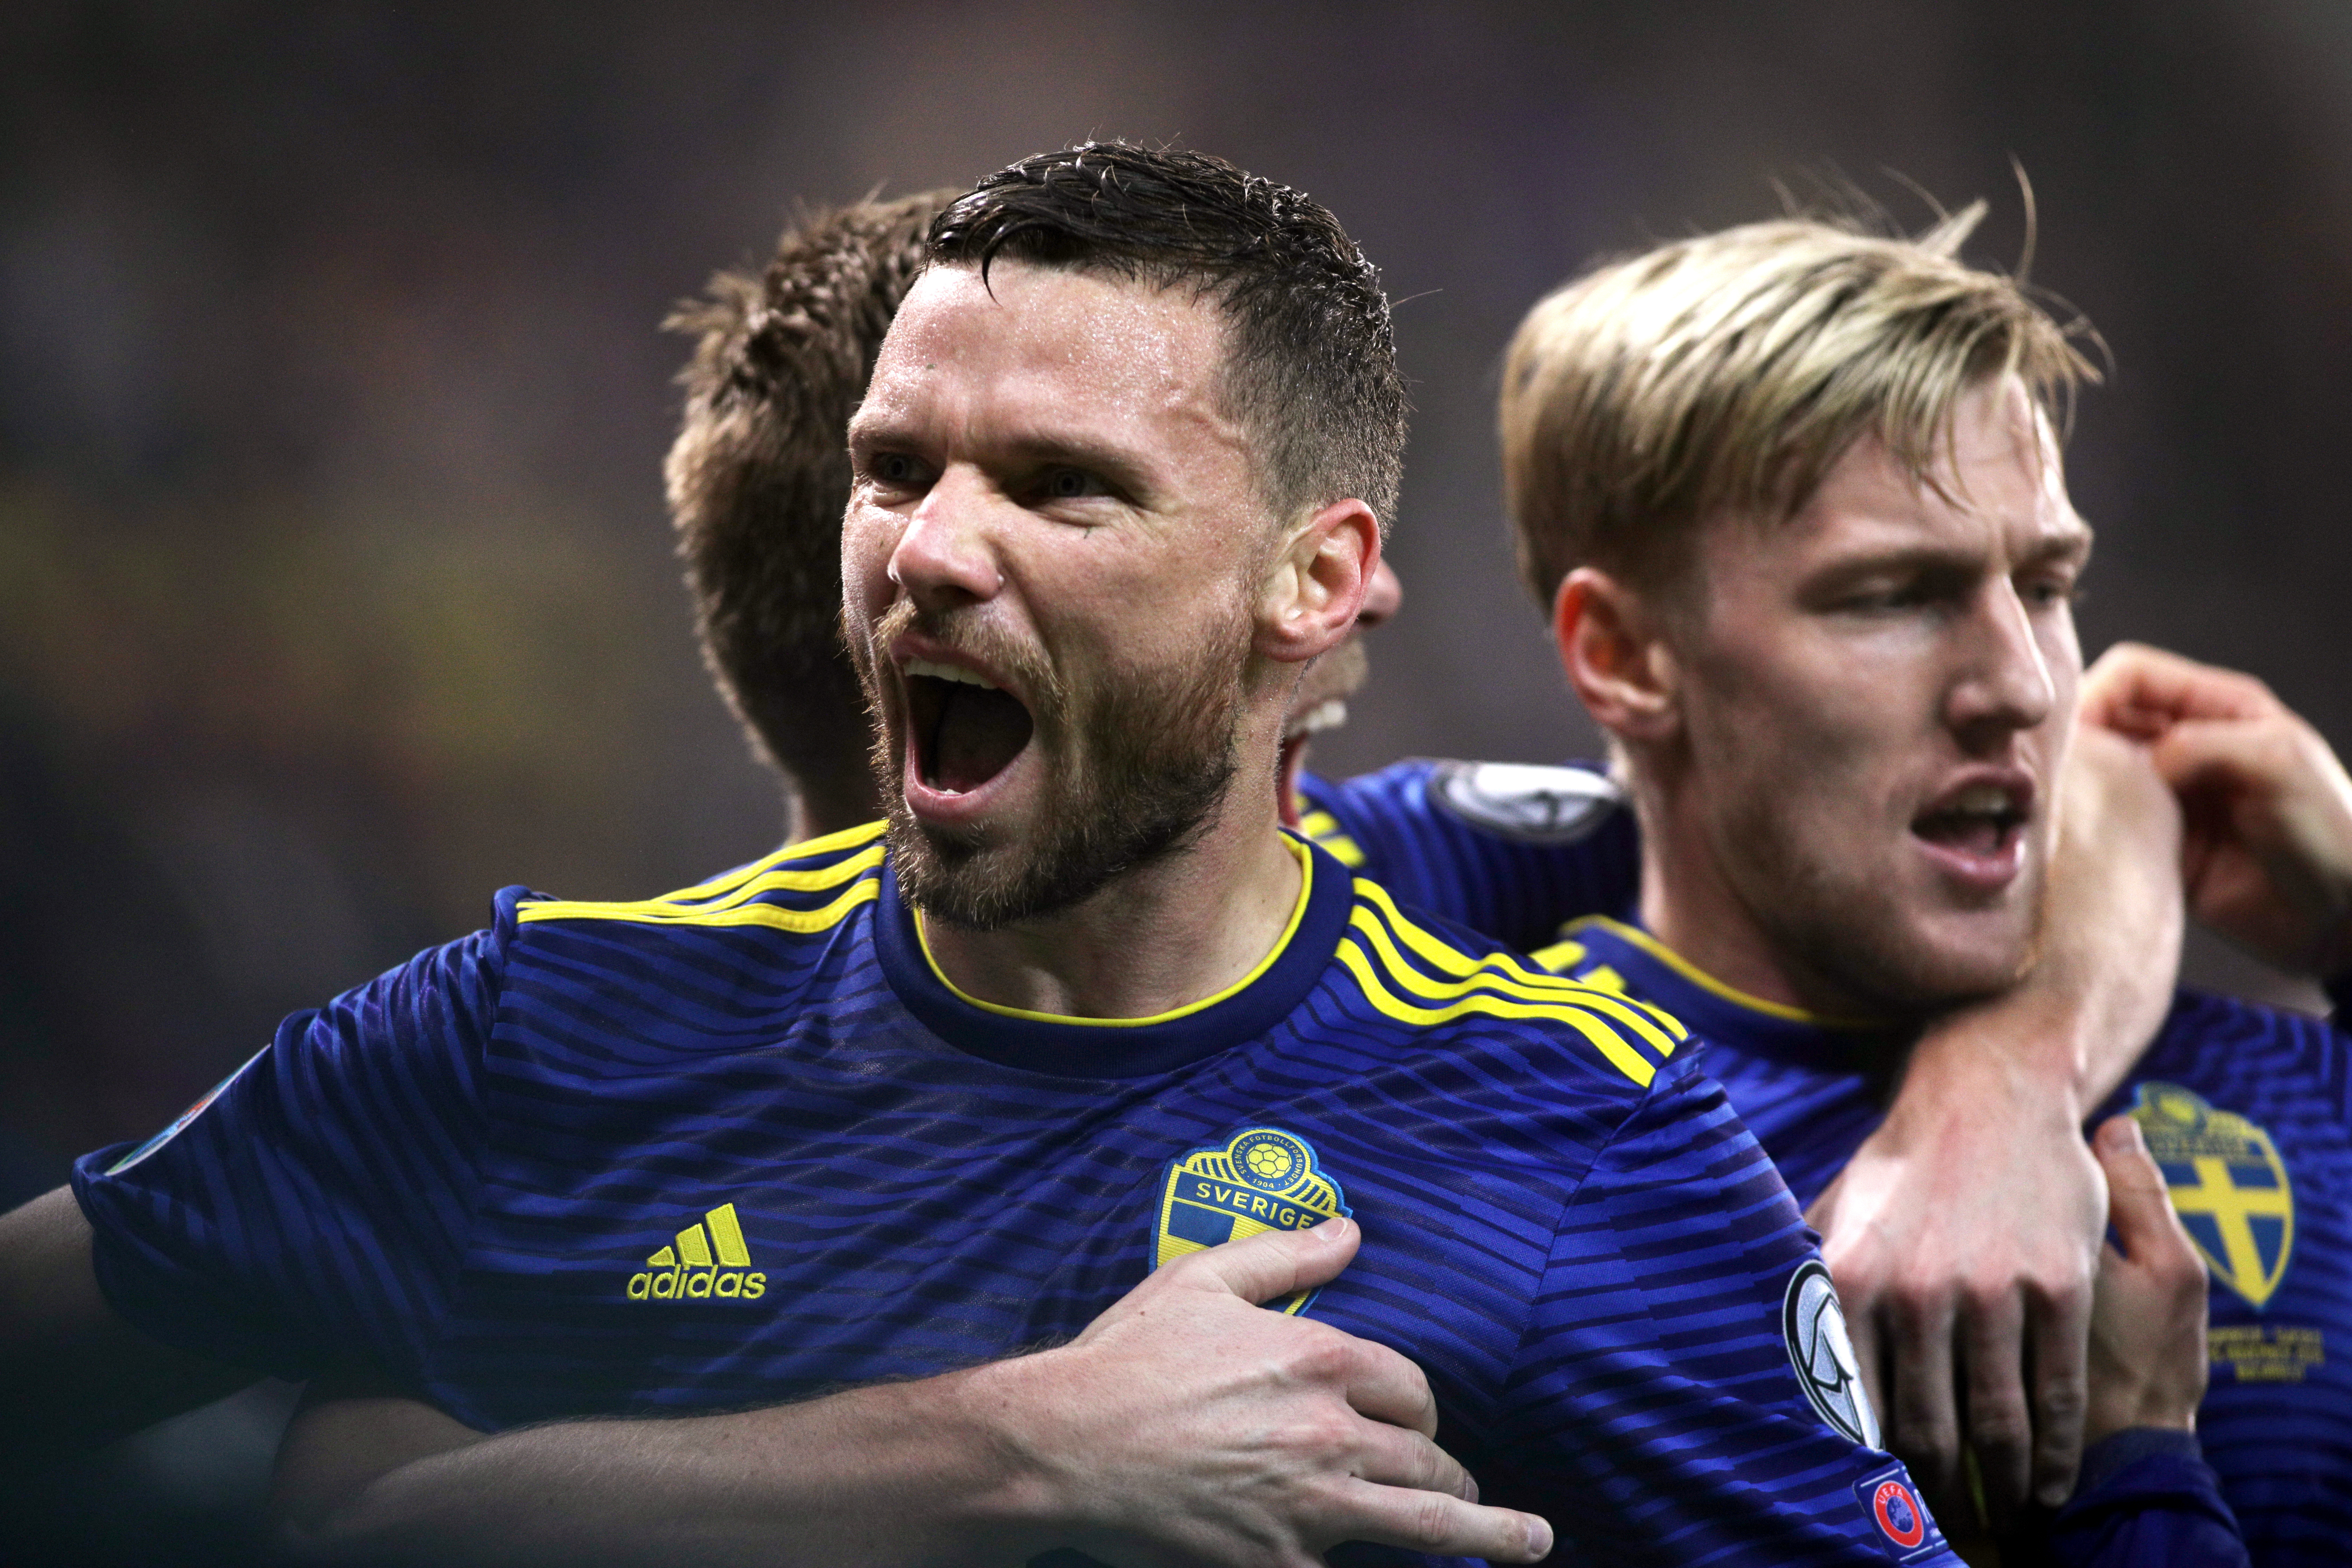 Προκριματικά Euro 2020: Ο Μπεργκ χάρισε την πρόκριση στη Σουηδία! Τα αποτελέσματα της βραδιάς – videos